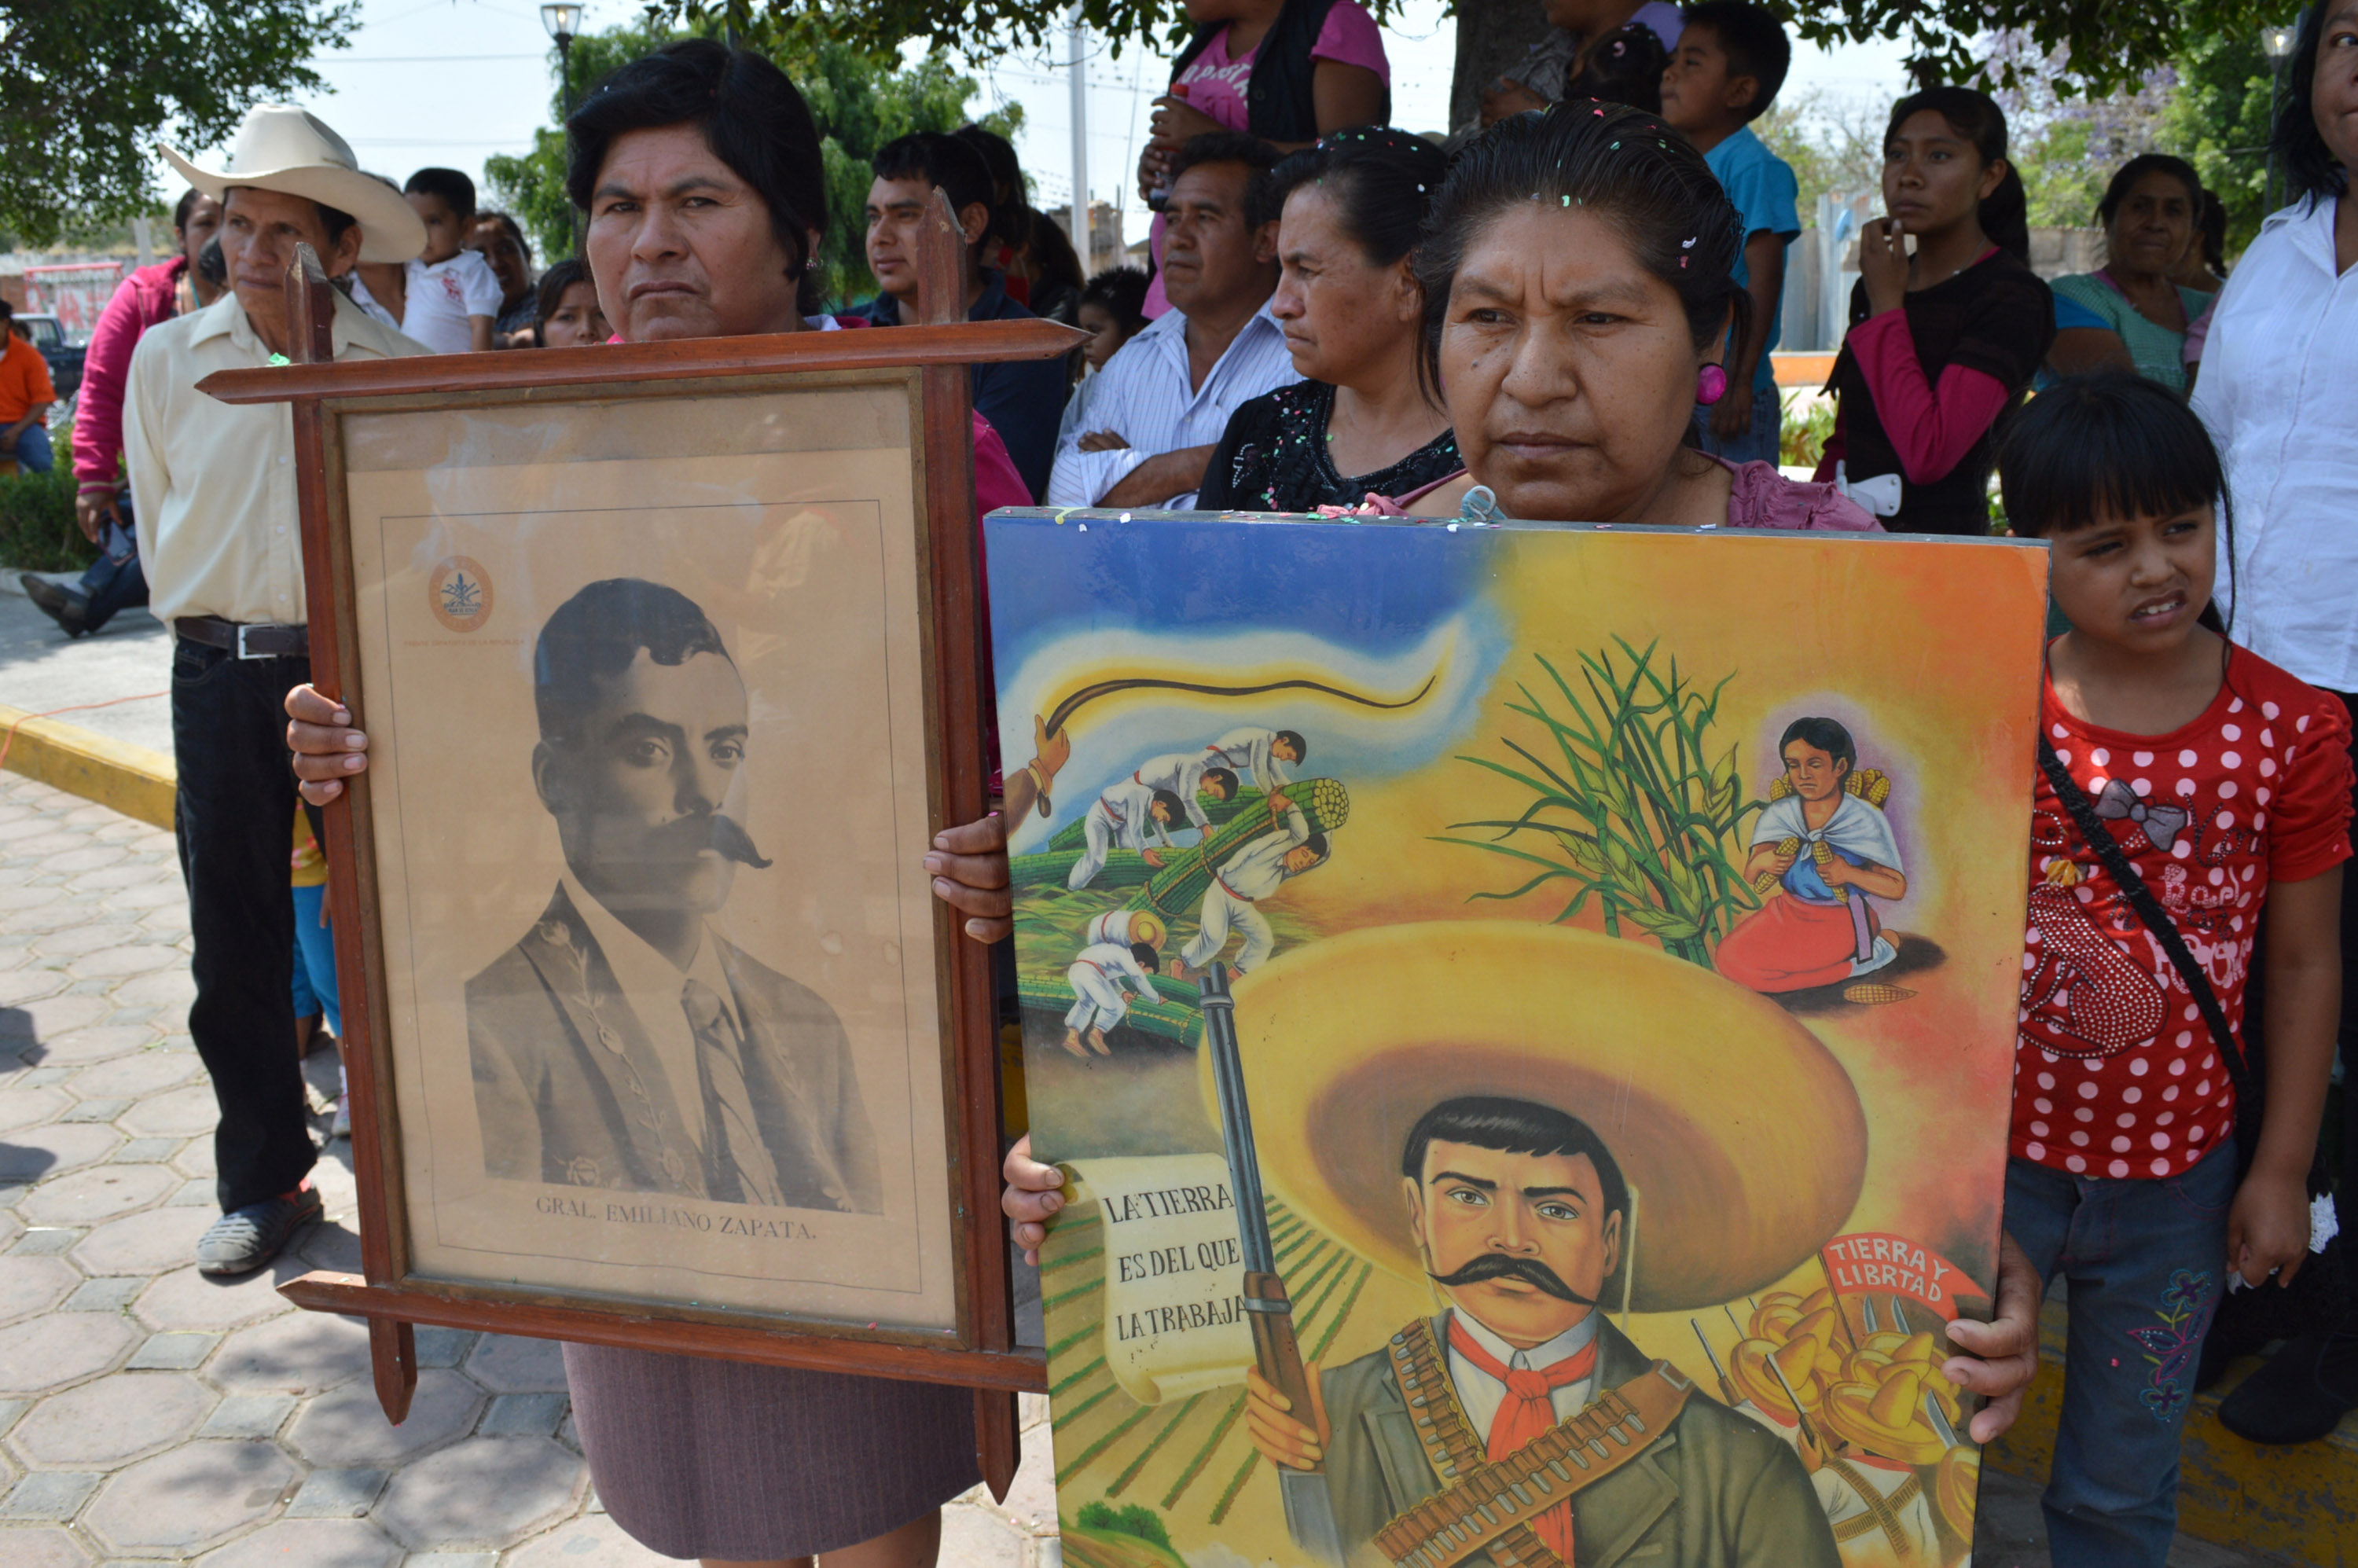 México necesita revolución sin armas: bisnieto de Zapata